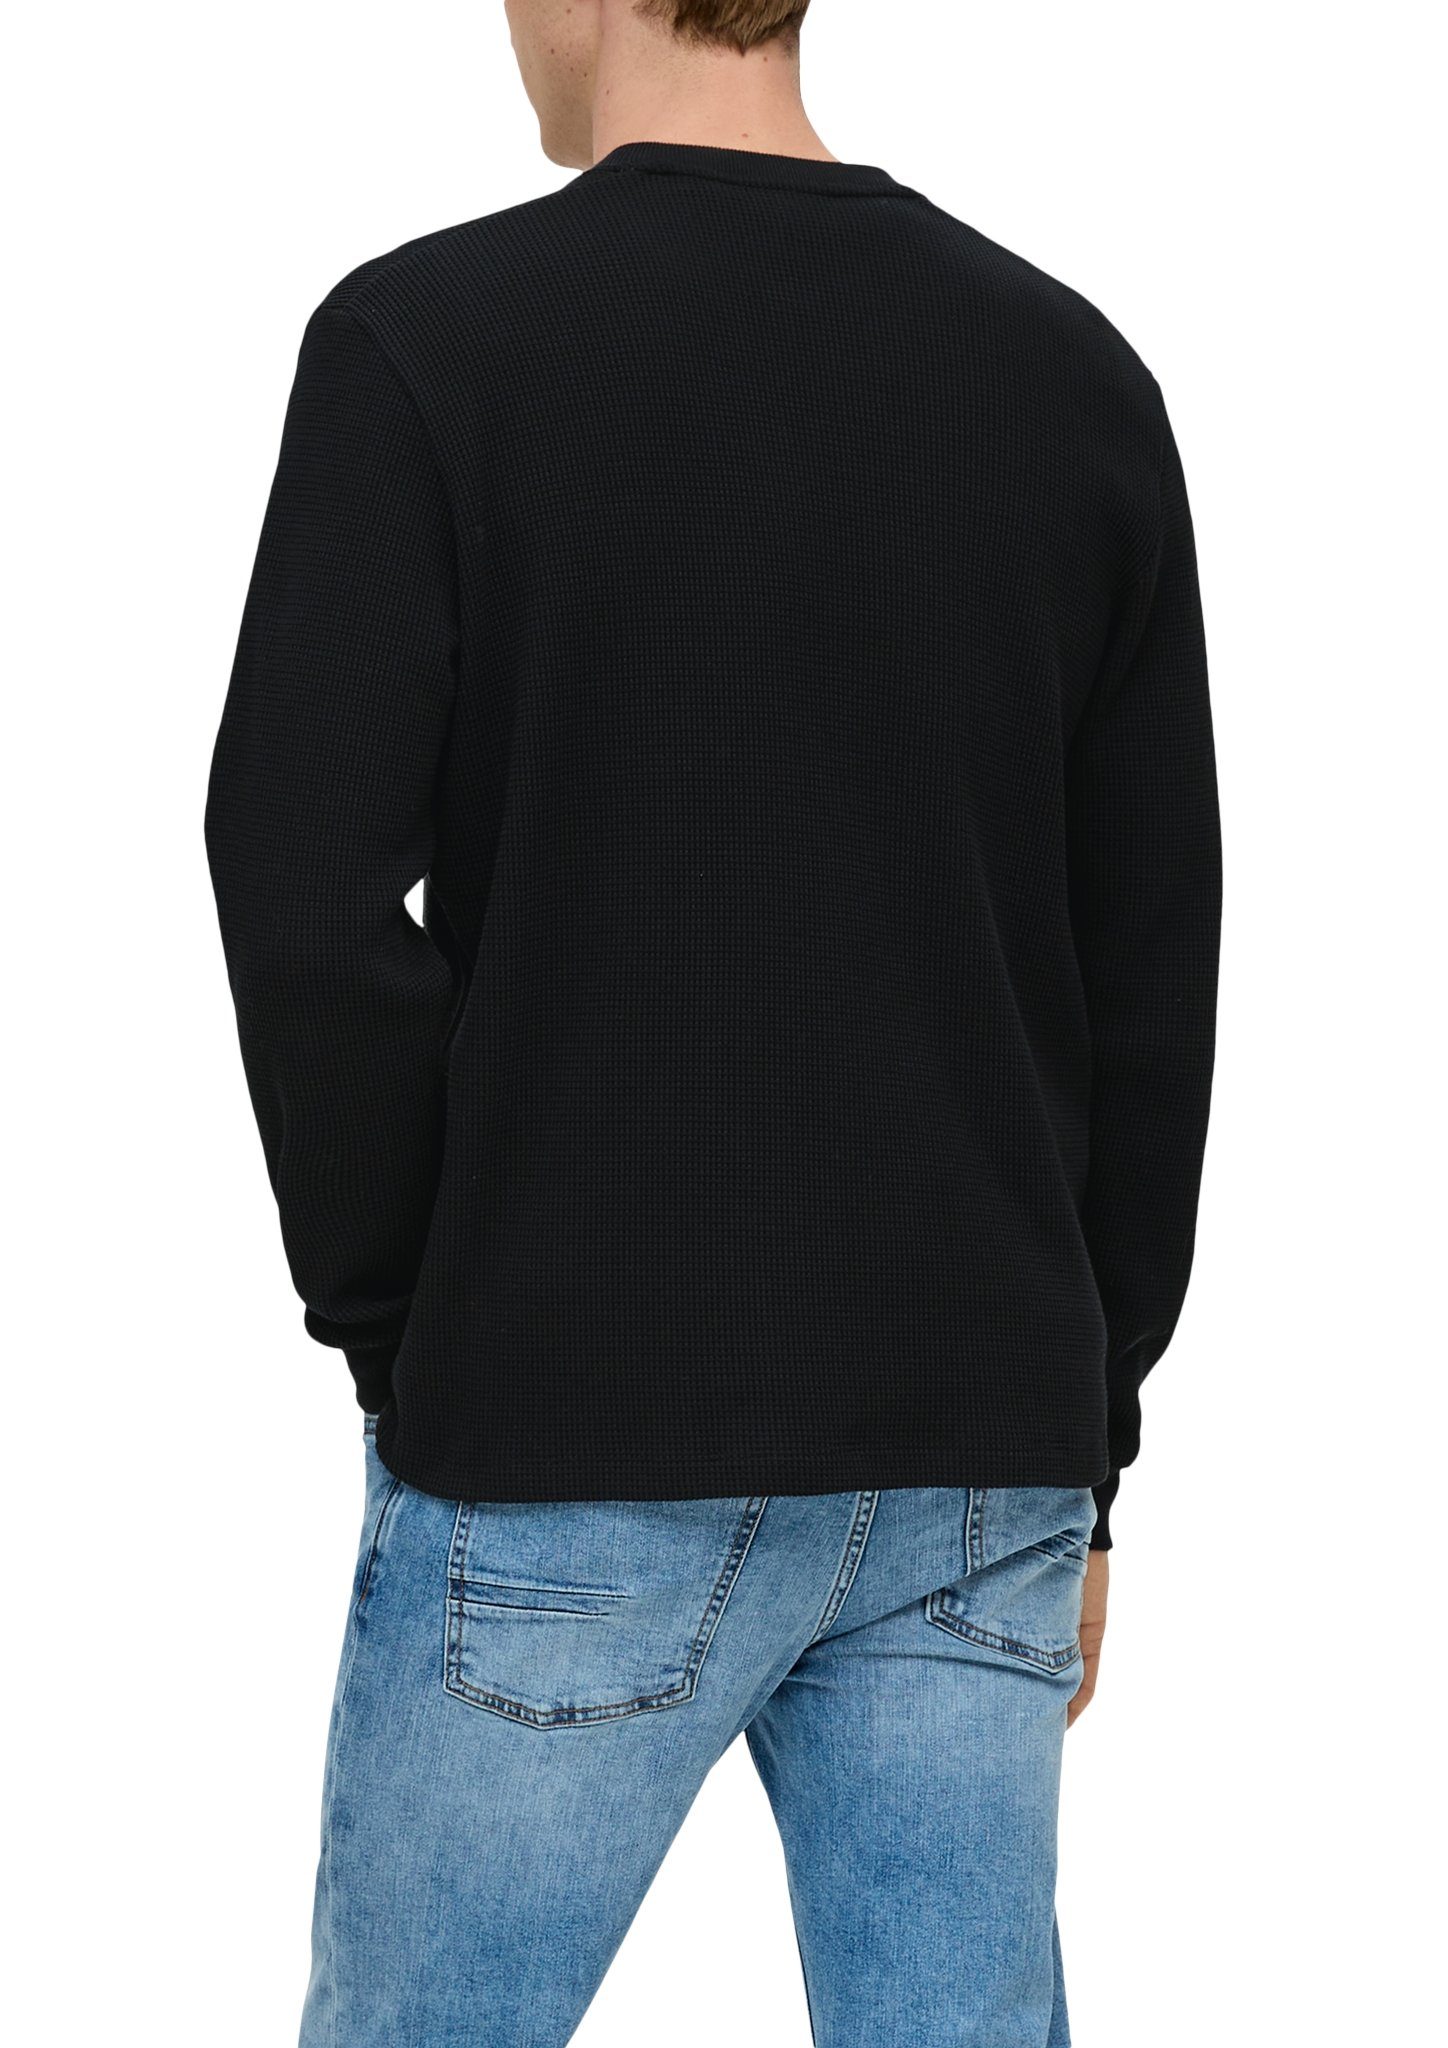 Rundhalsausschnitt black Sweatshirt mit s.Oliver